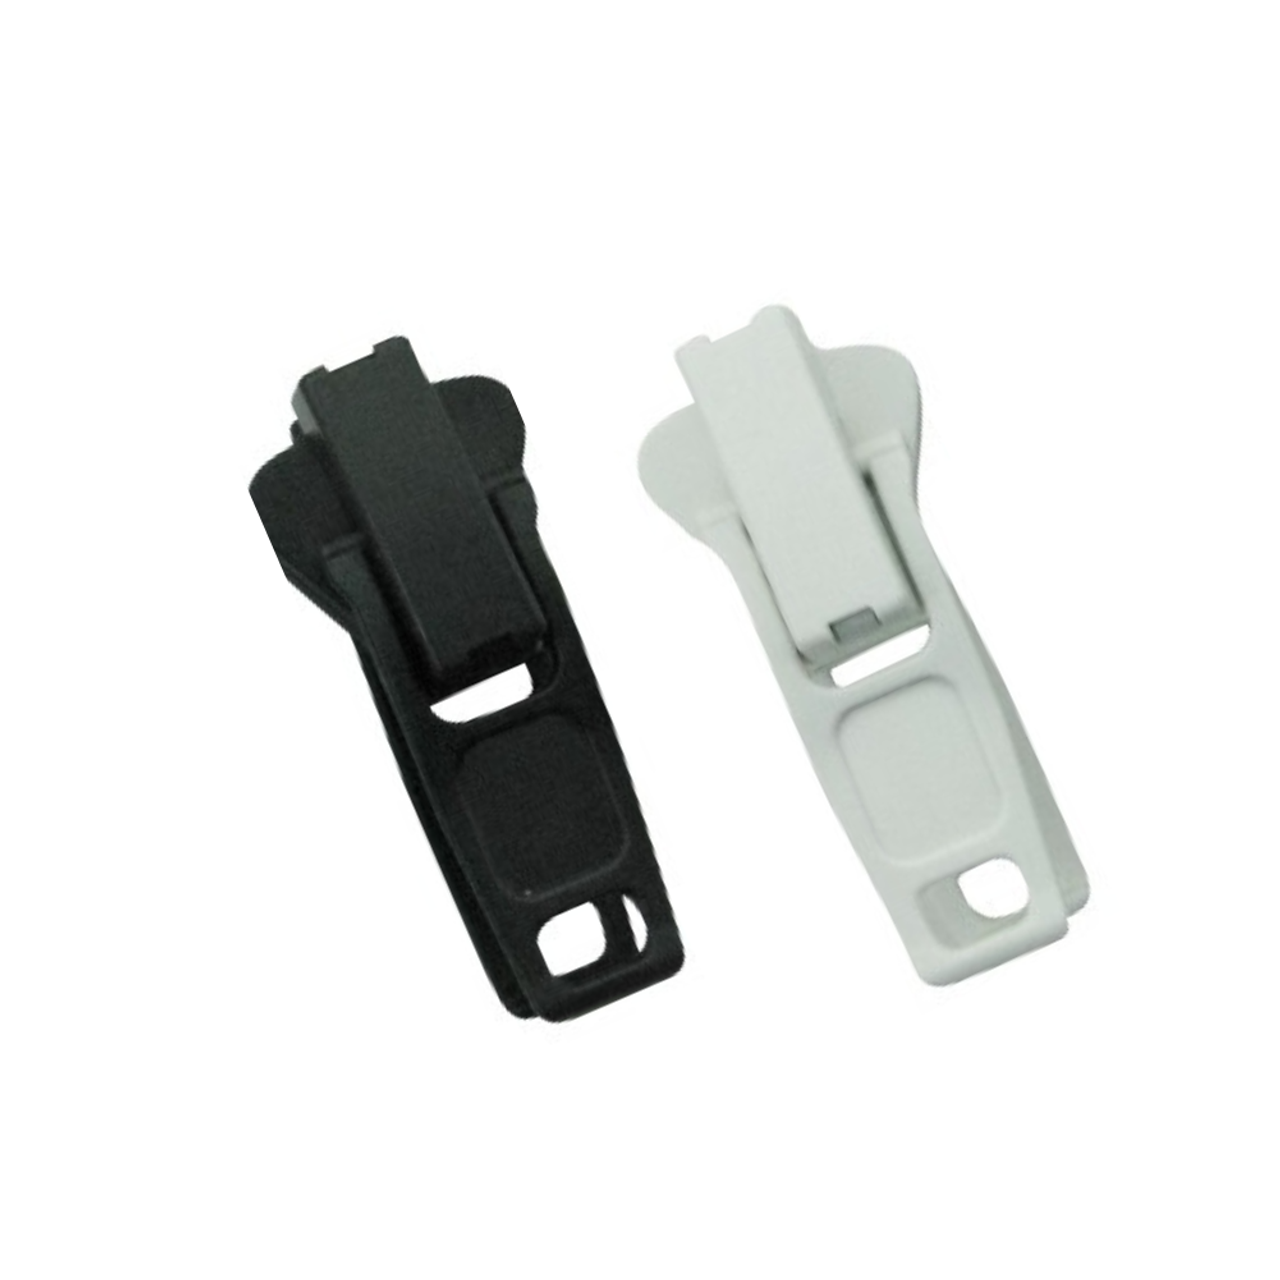 Zipper Sliders YKK or LENZIP - Plastic Vislon #10 - Locking - Double Pull